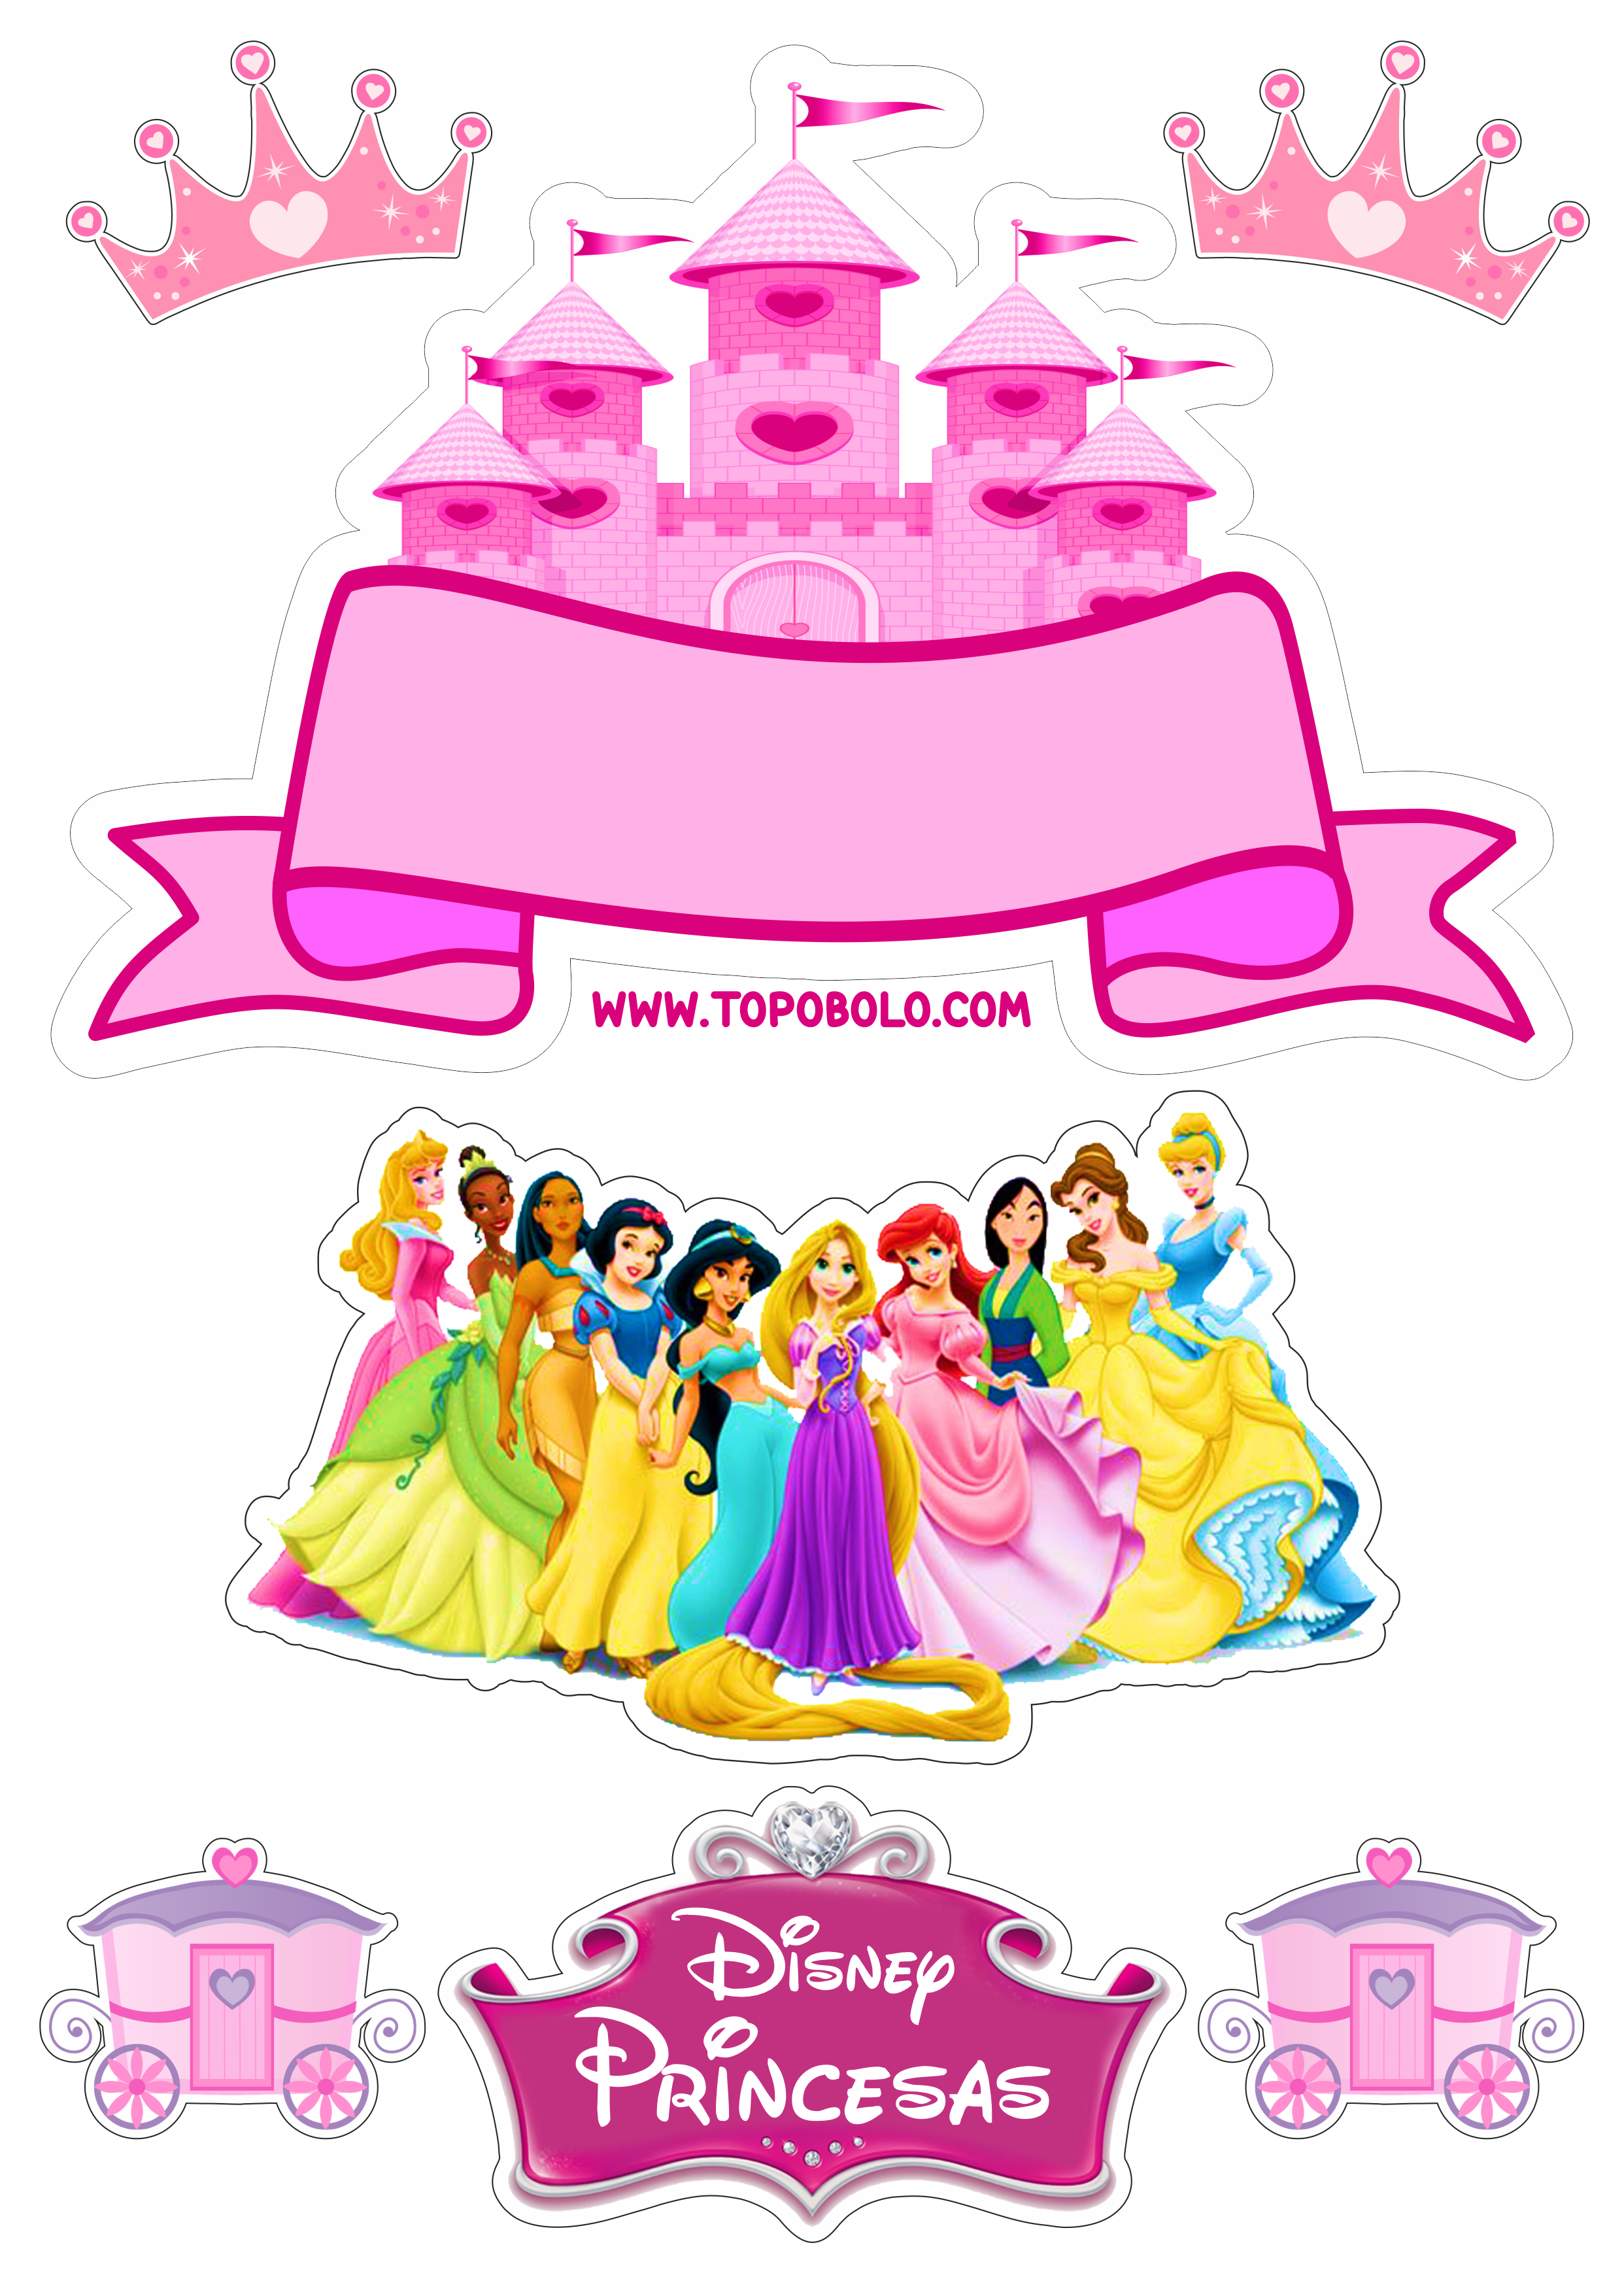 Topo de bolo princesas disney baby decoração de festa infantil pronto para imprimir papelaria png